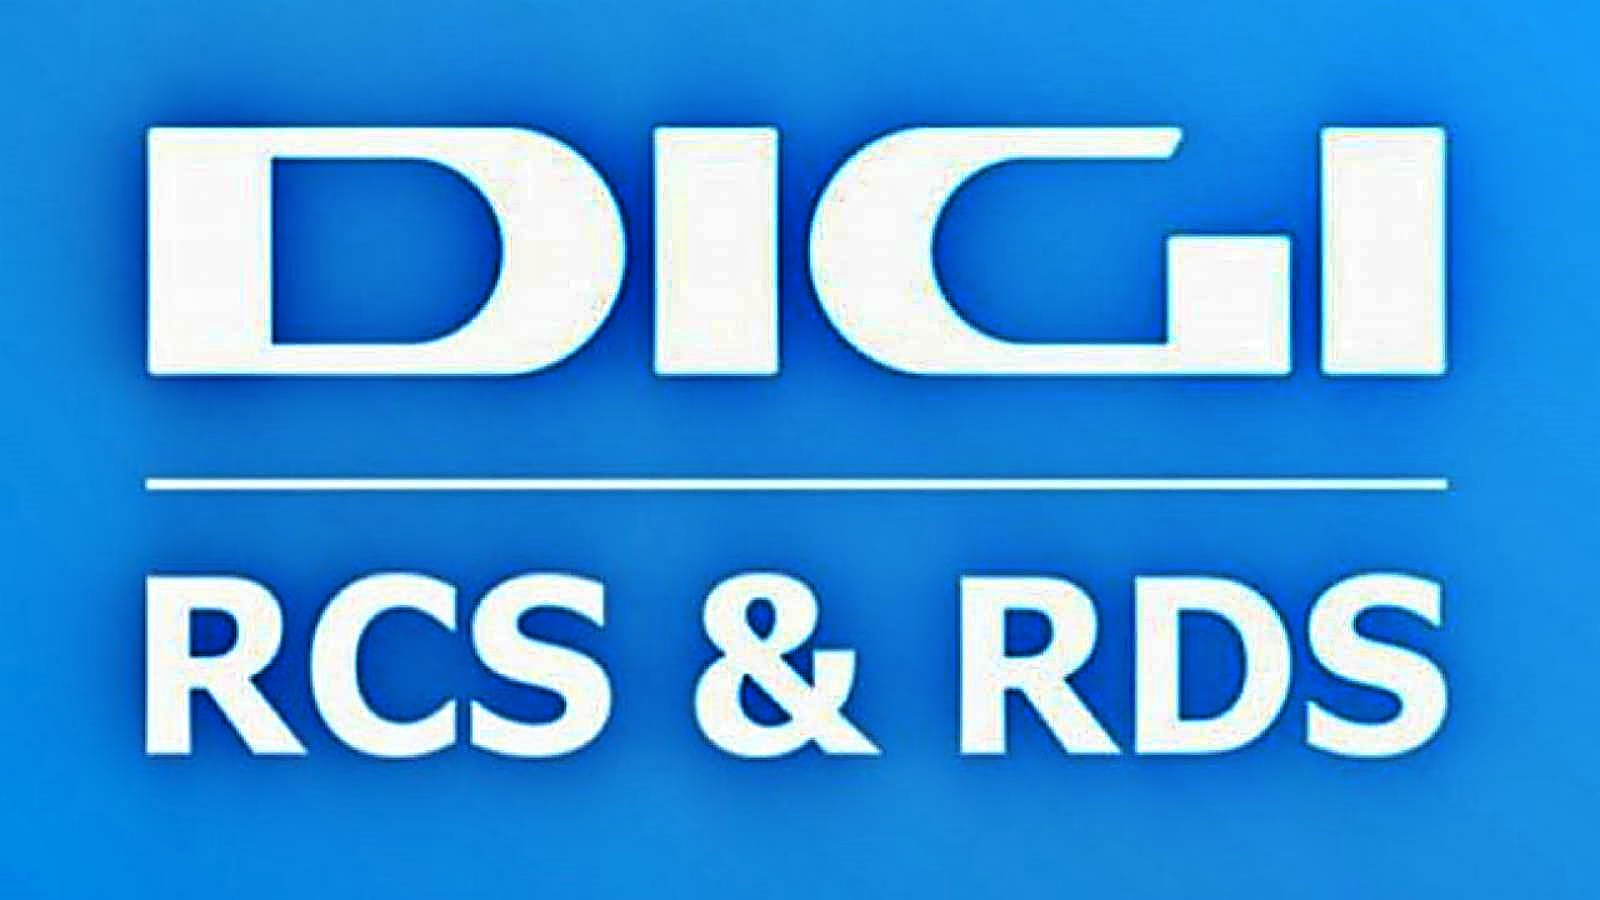 RCS & RDS ilmoittaa Unkarin tytäryhtiön myynnin päätökseen